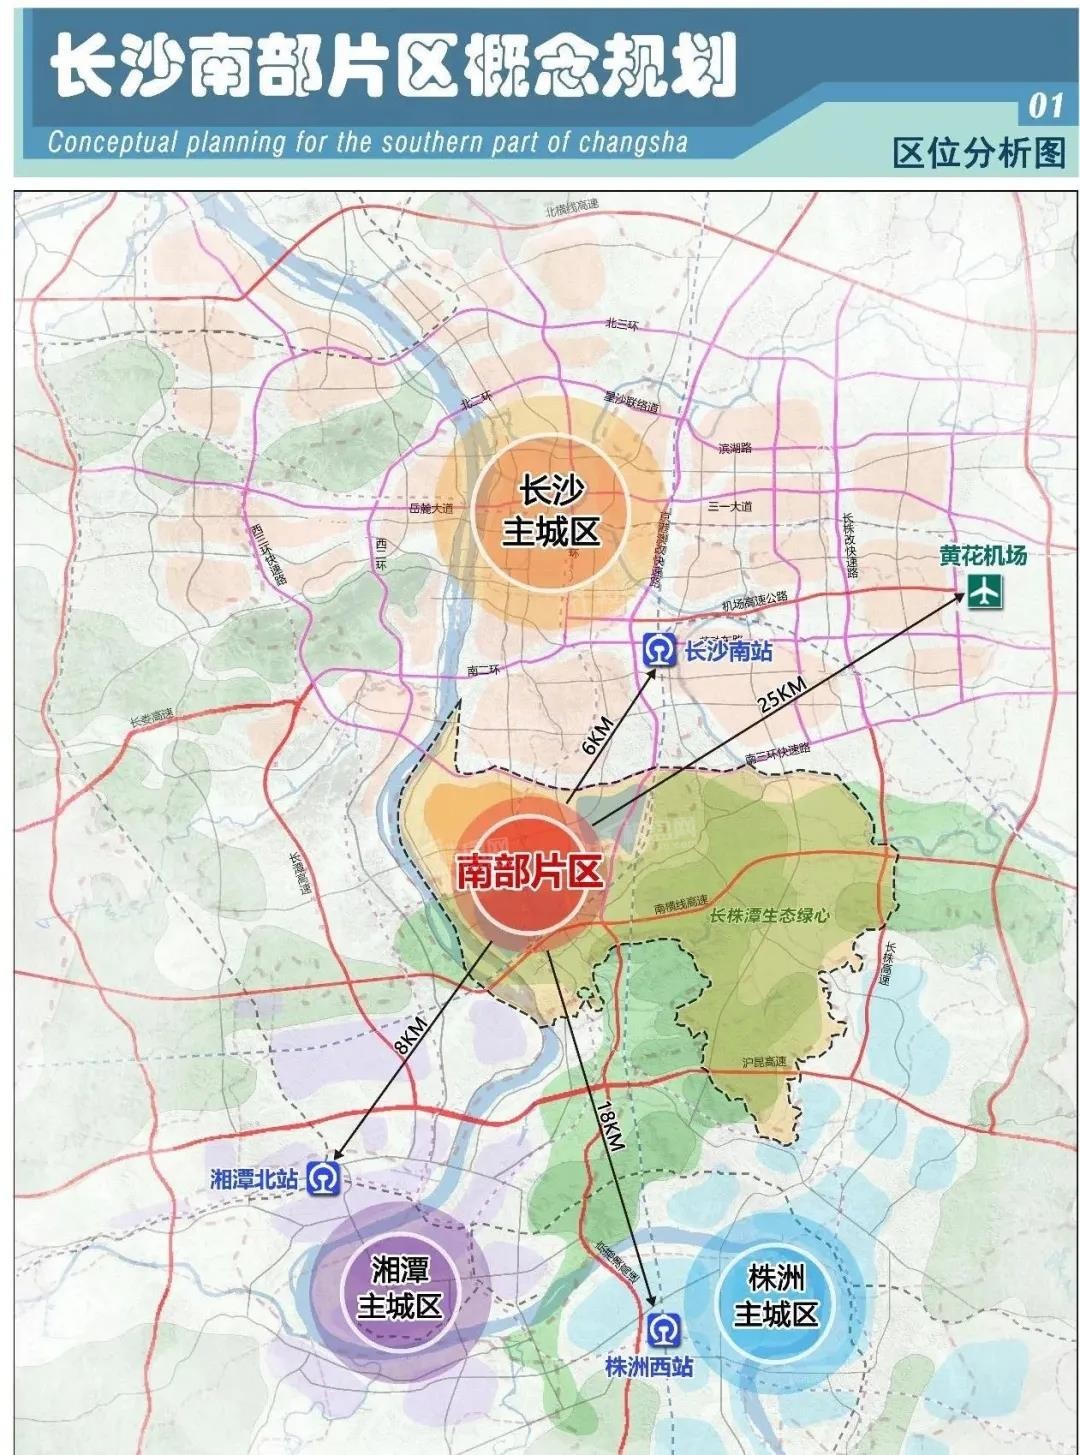 九华发展看点十足,绿地湘江城际空间站将打造九华封面人居